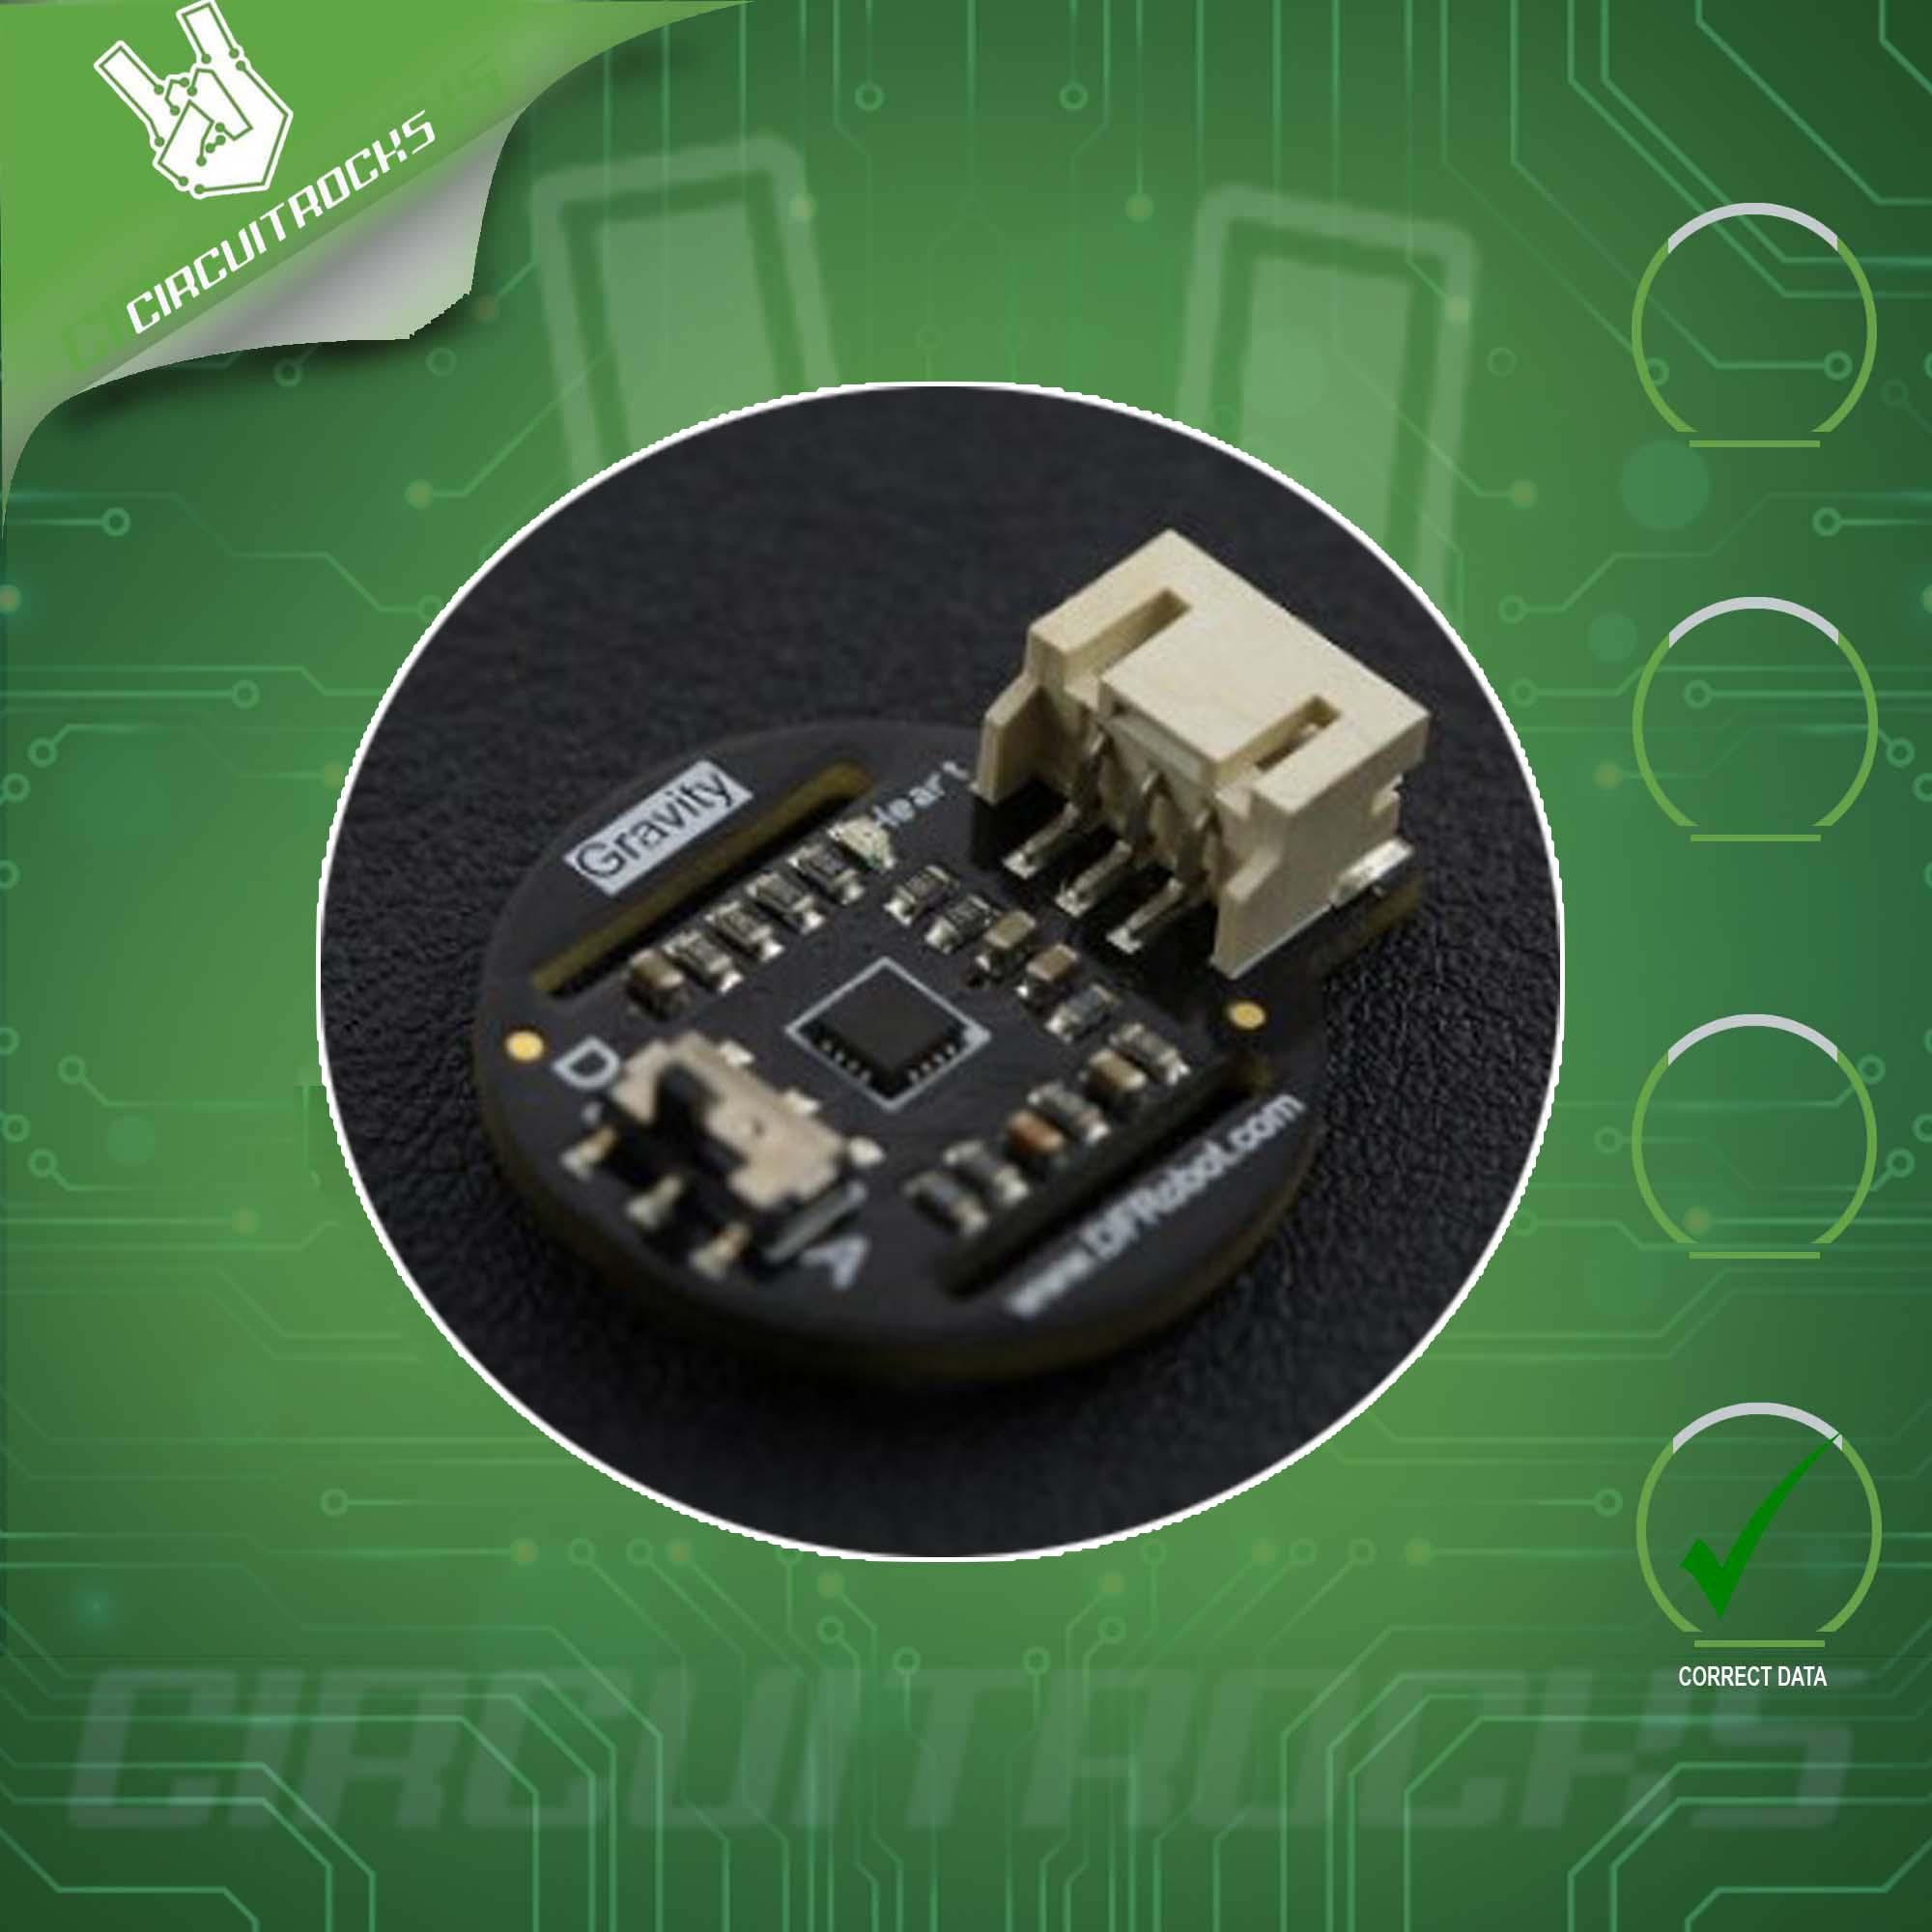 Circuitrocks NFC RFID MFRC522 Reader Kit 13.56MHz For Arduino Starter Kits